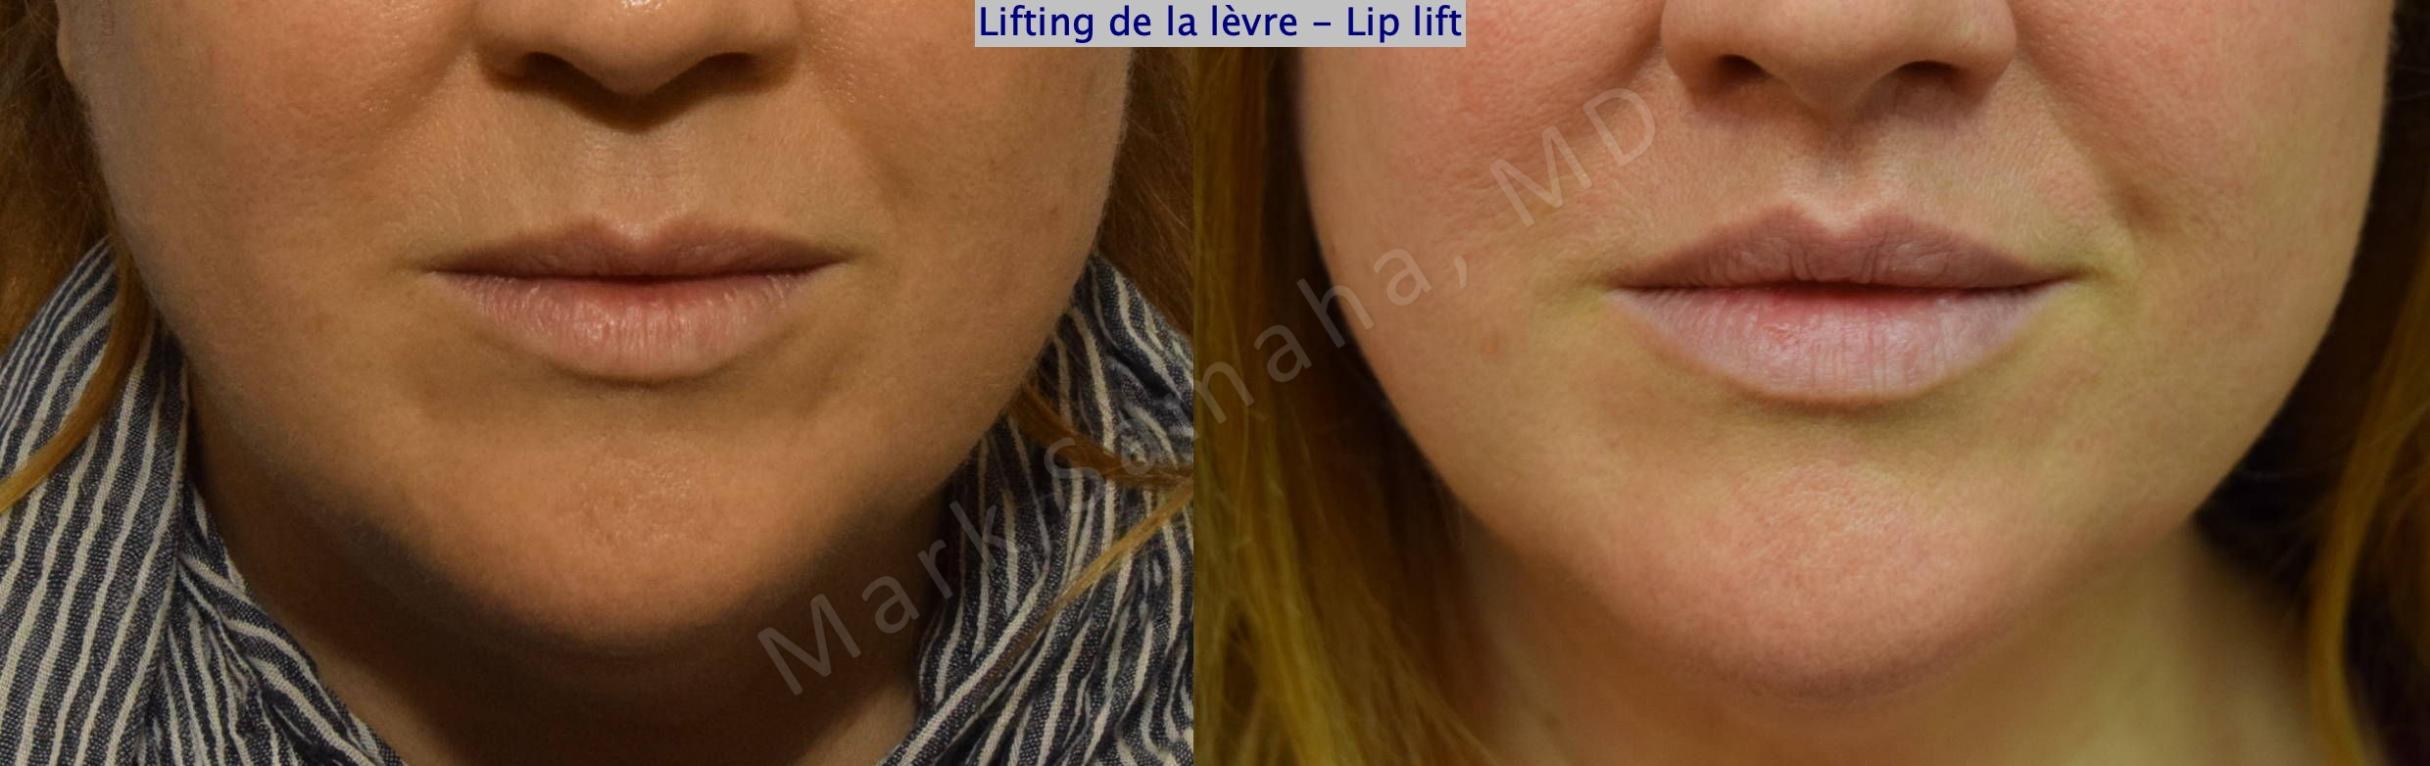 Before & After Lifting de la lèvre supérieure / Lip Lift  Case 173 Front View in Mount Royal, QC